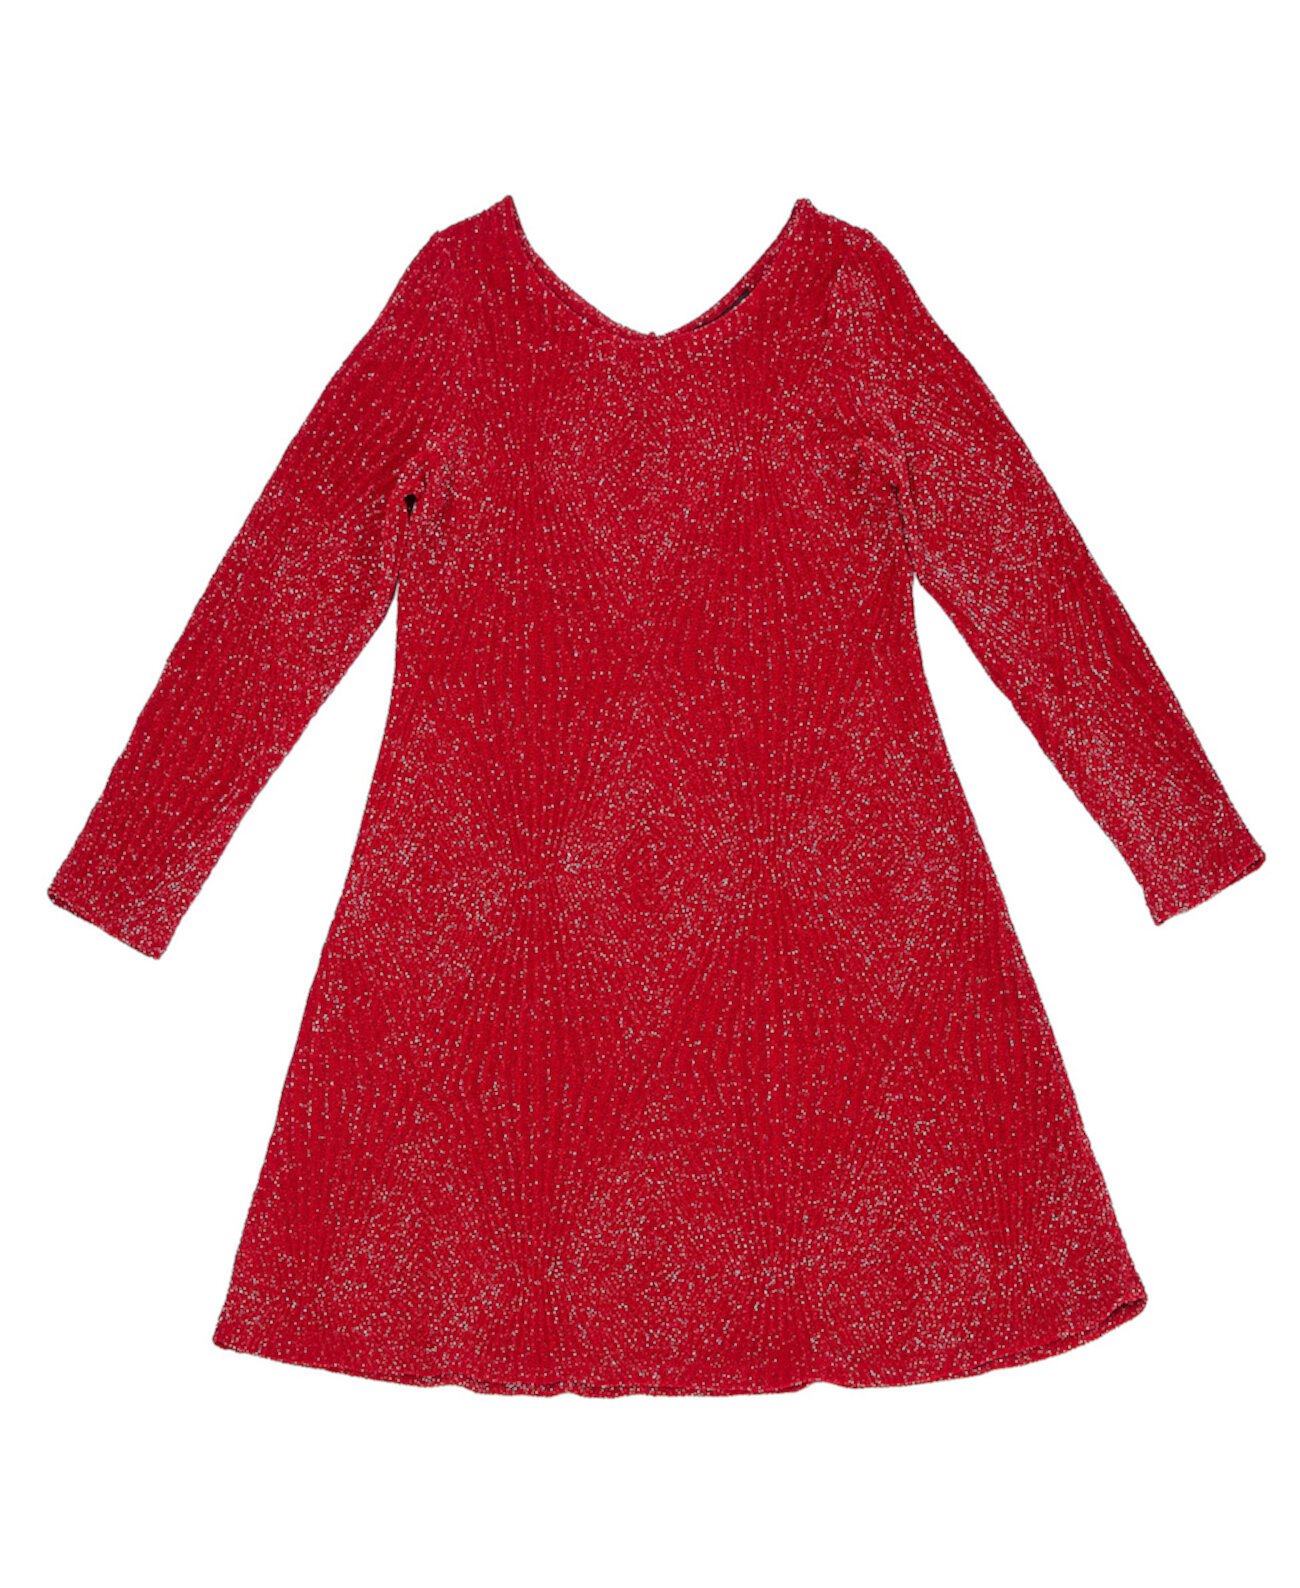 Вязаное платье с люрексом металлизированного цвета с длинными рукавами для больших девочек Trixxi